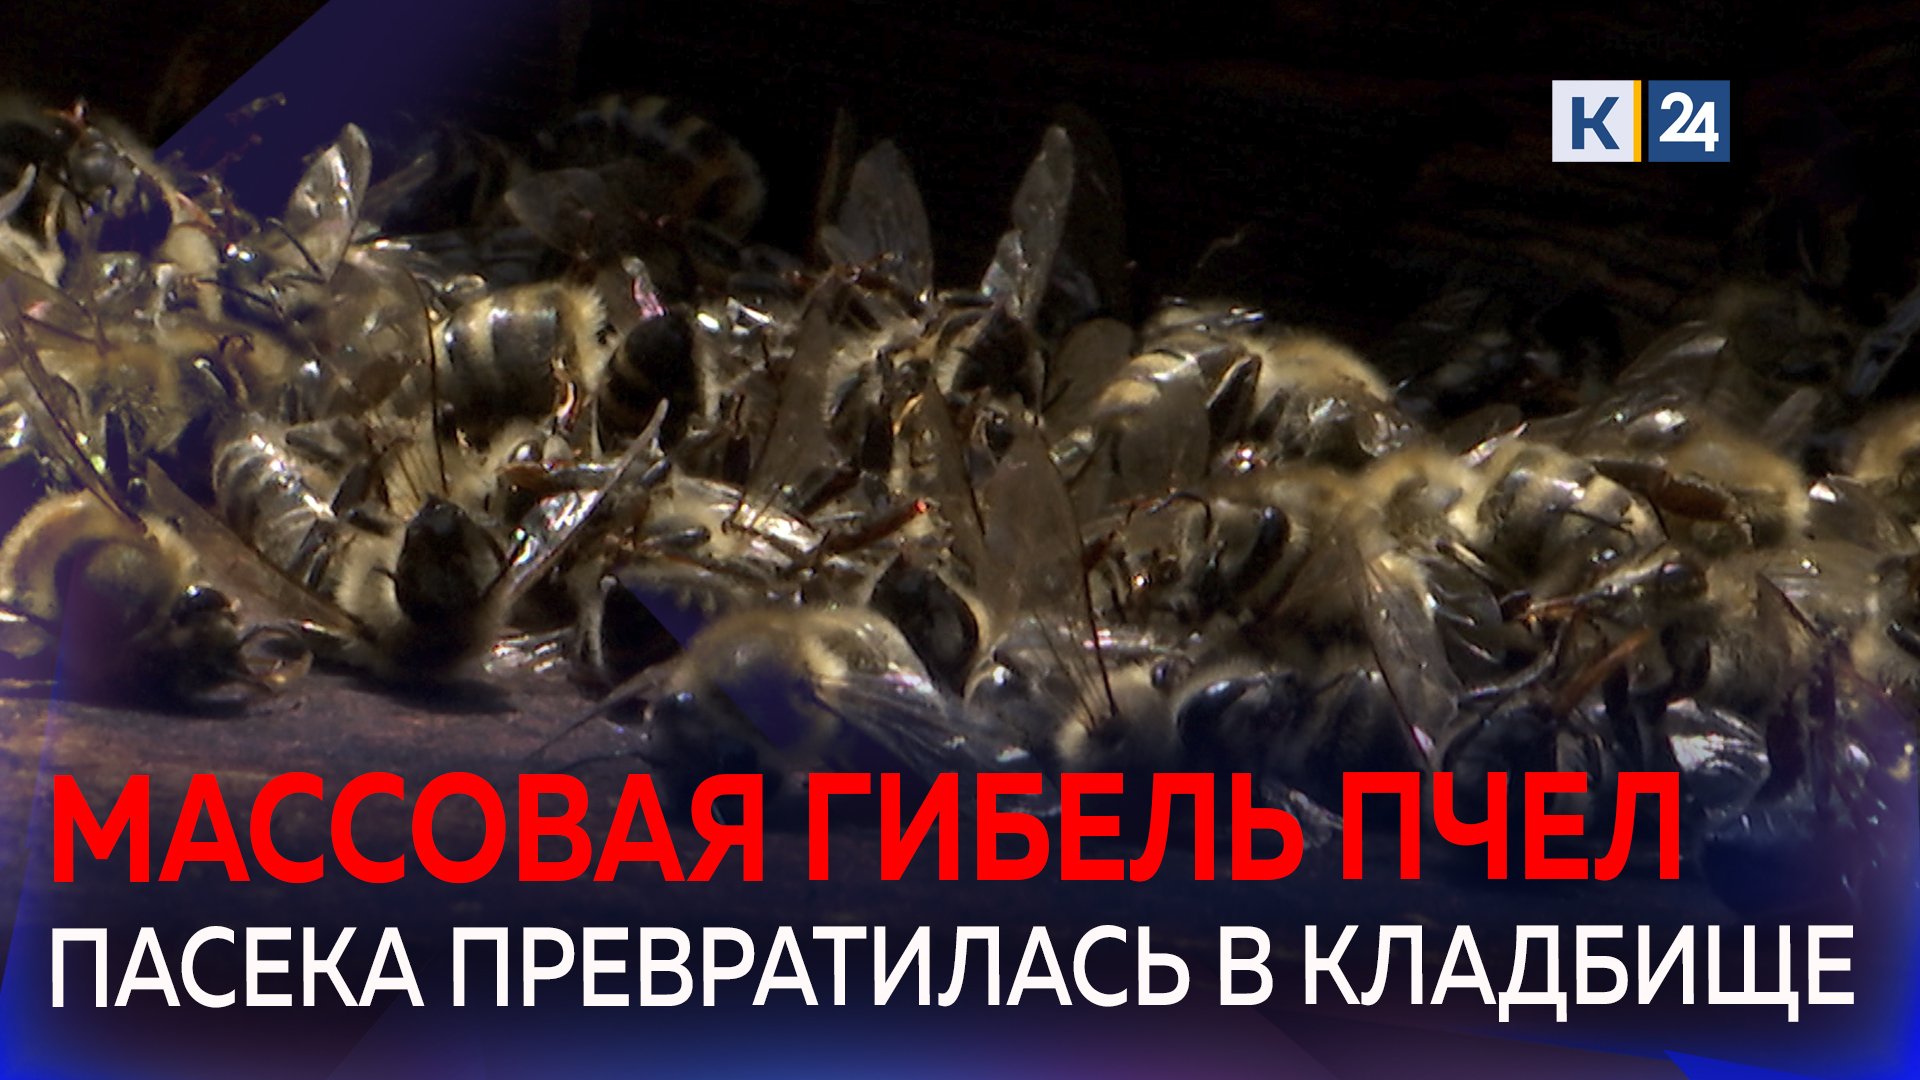 Тысячи пчел погибли на Кубани